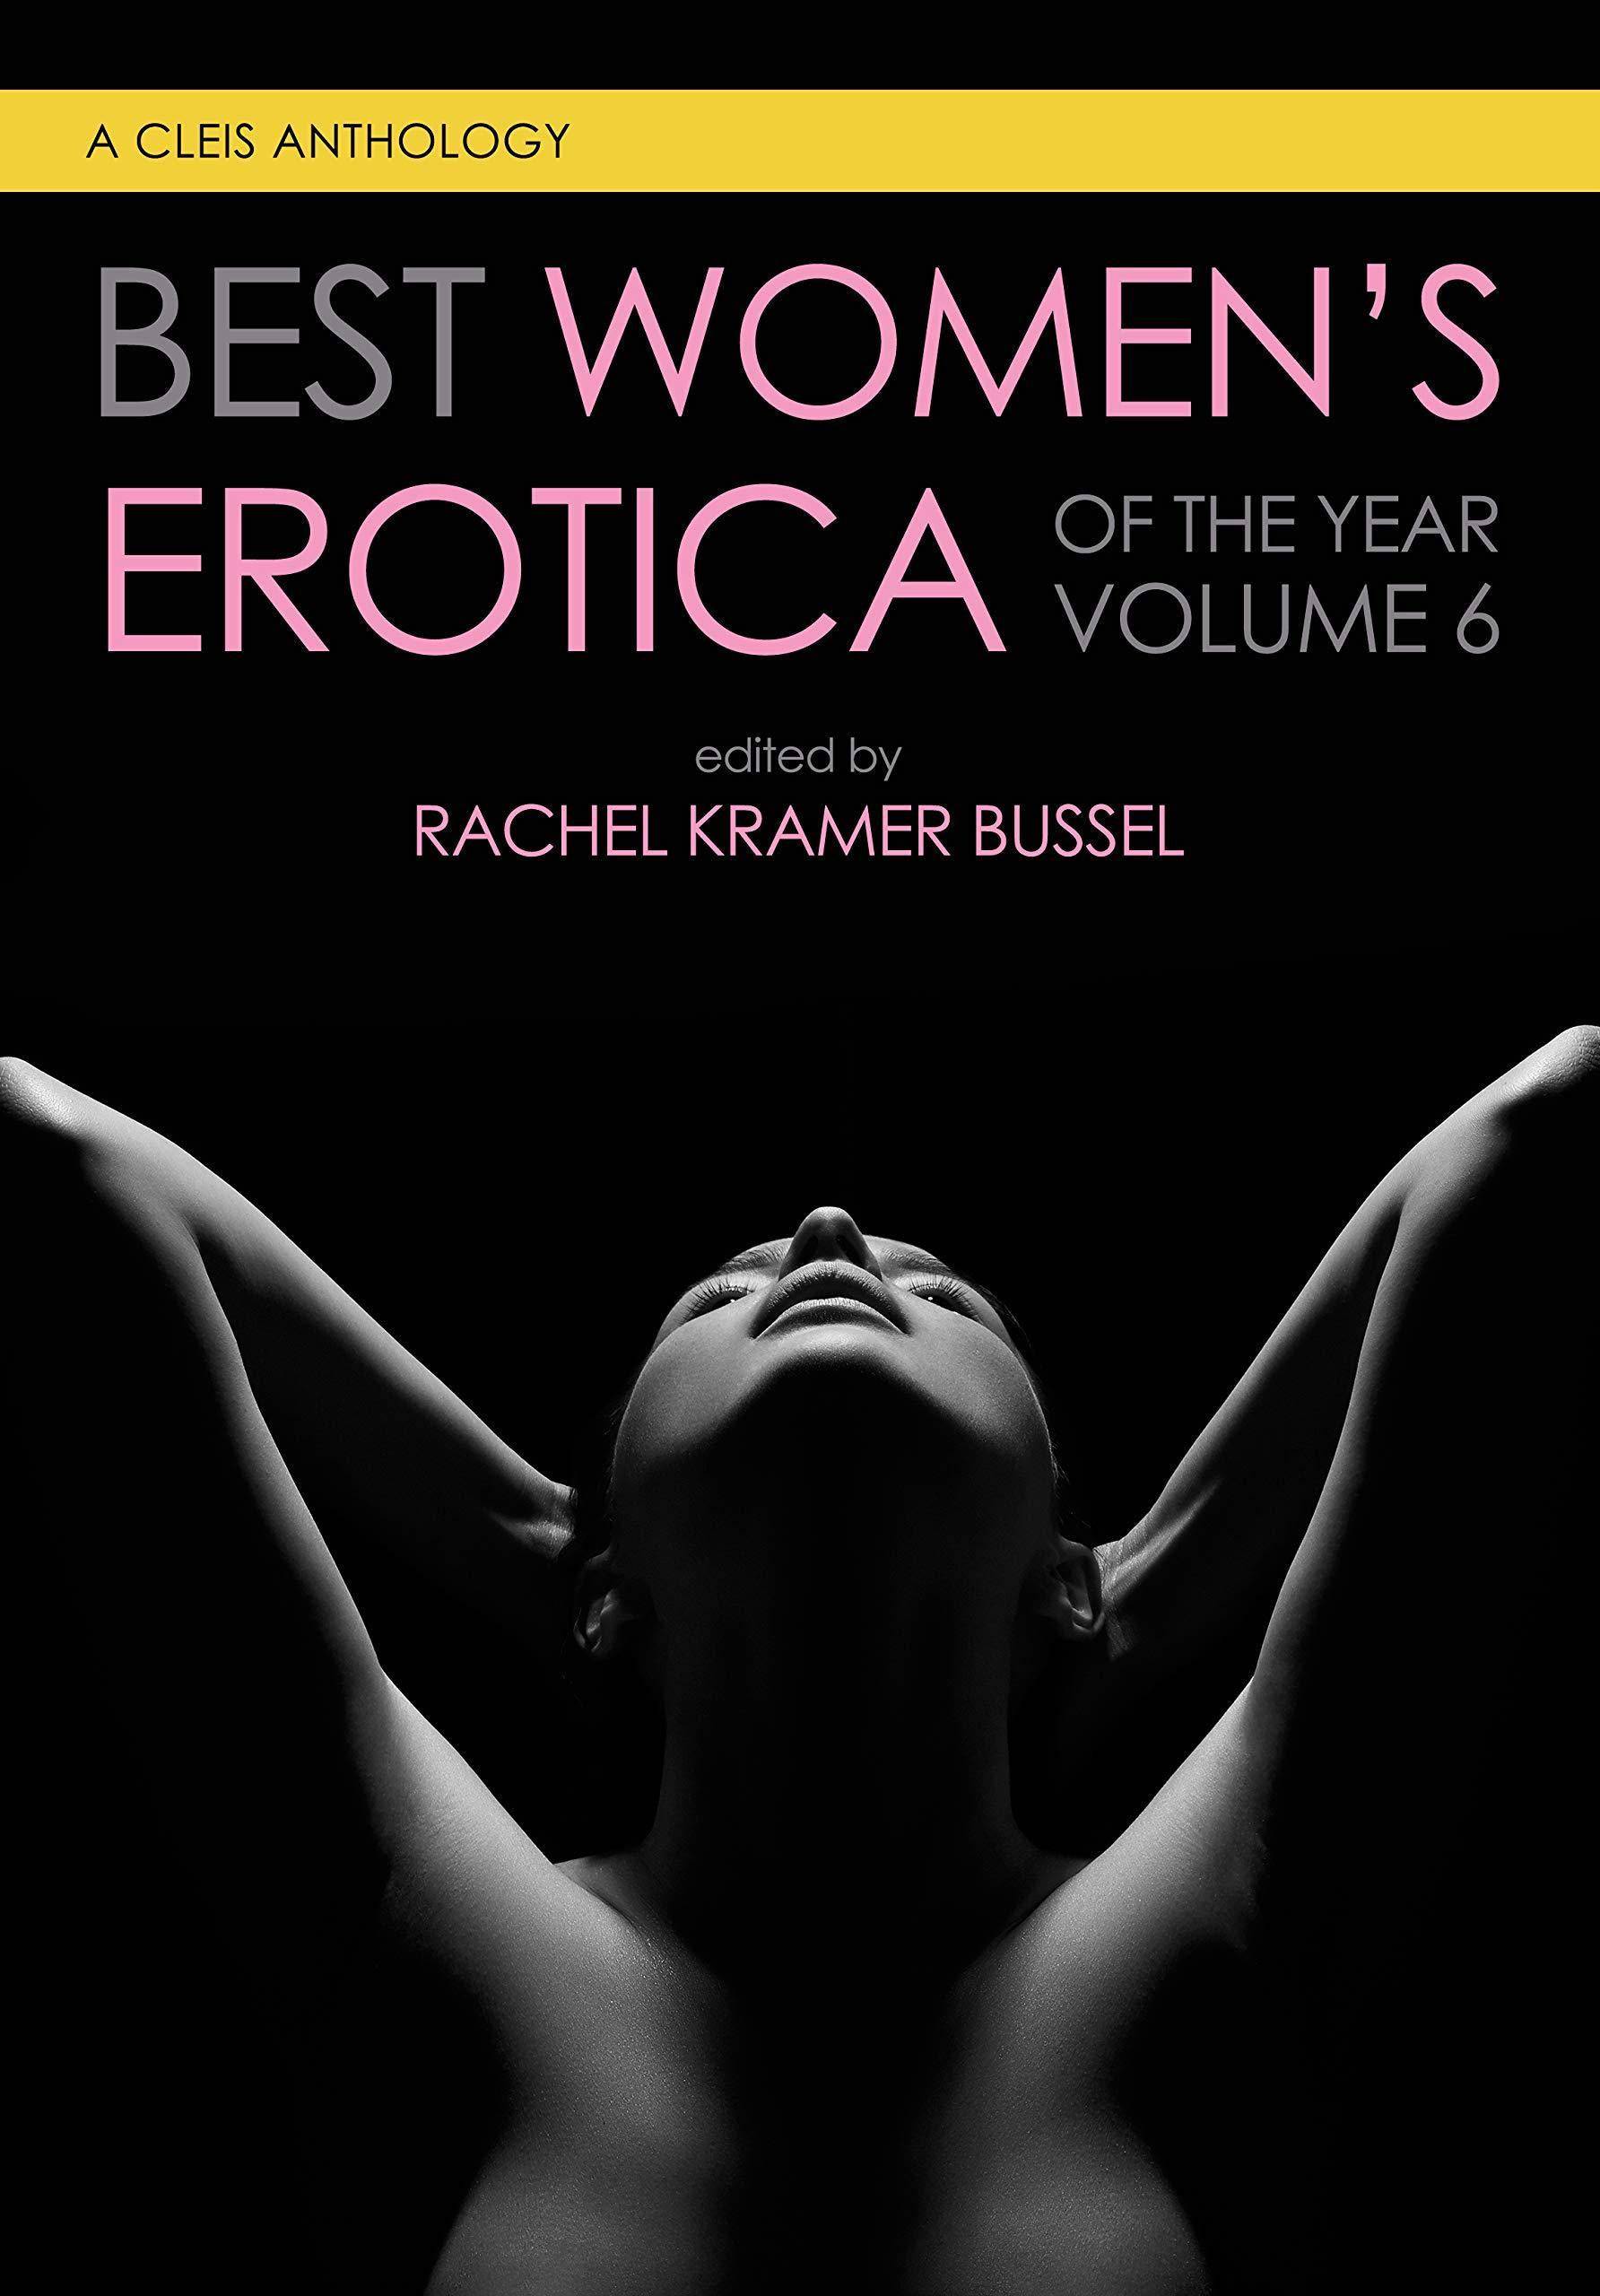 Best Women's Erotica of the Year, Volume 6 - SureShot Books Publishing LLC